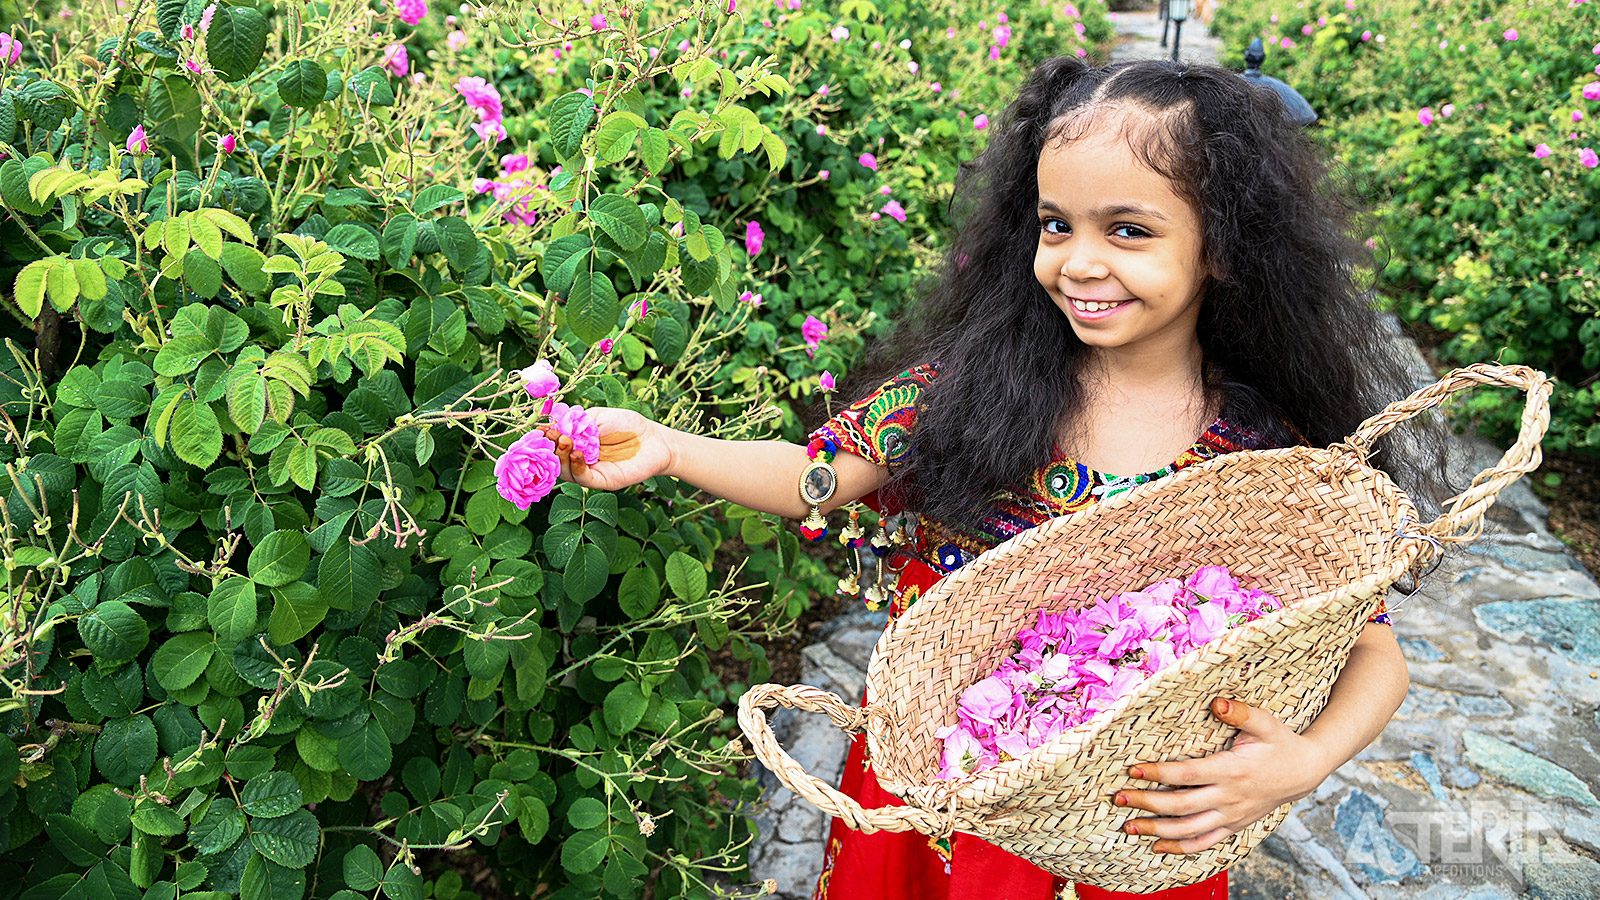 In Taif bezoek je een rozenfabriek waar de locals rozen verzamelen om er één van de beste rozenparfums ter wereld van te maken